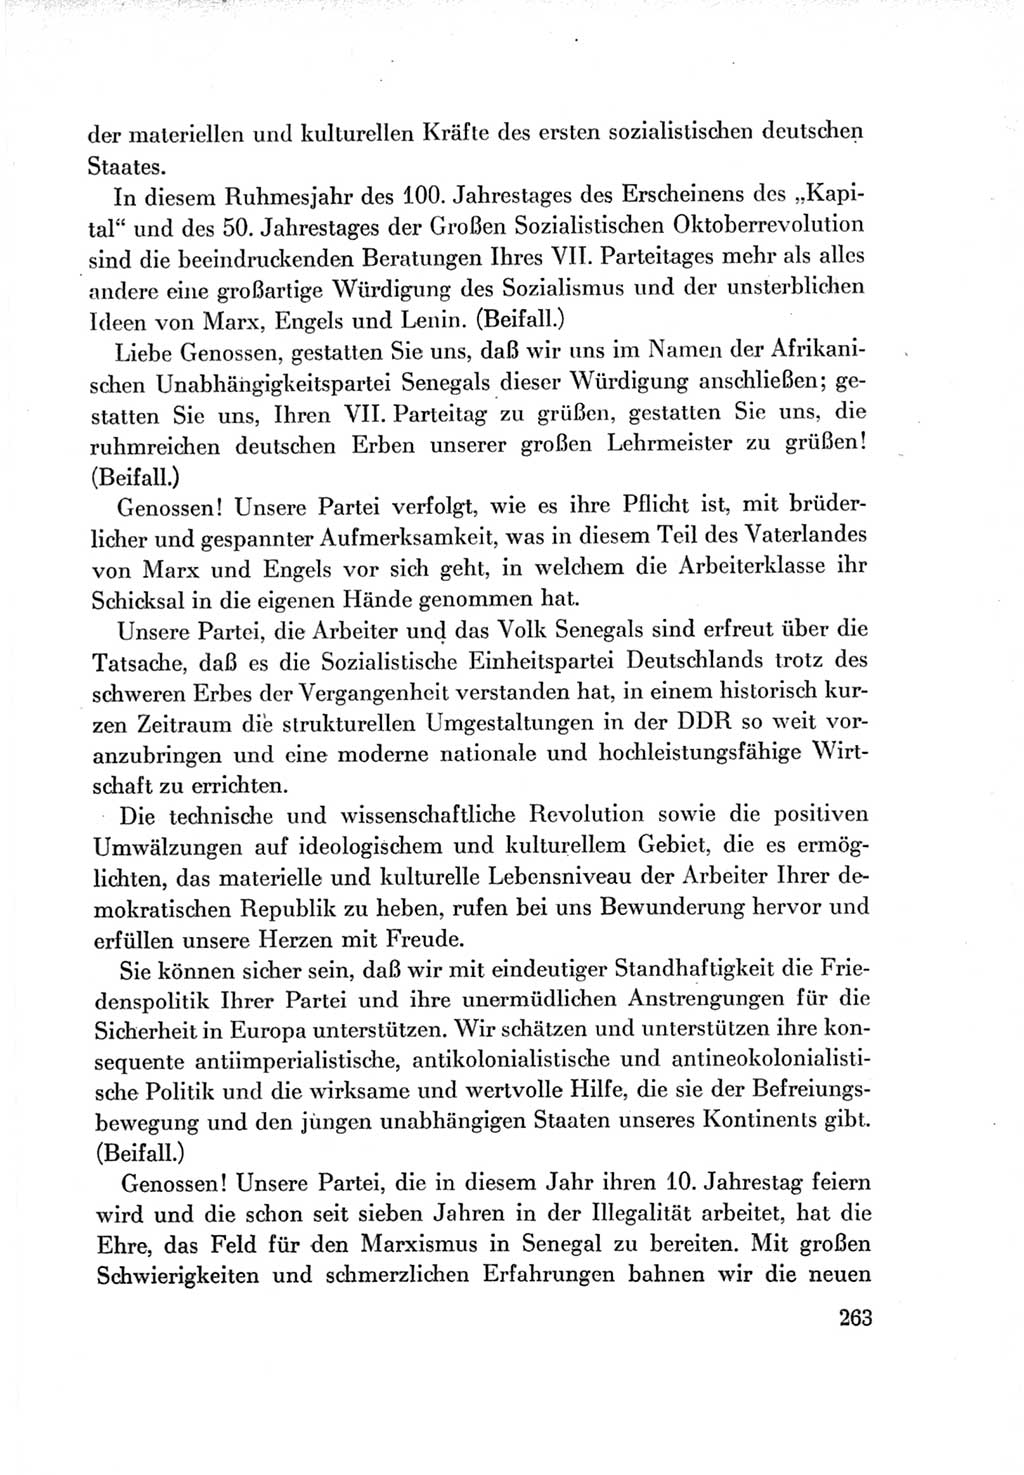 Protokoll der Verhandlungen des Ⅶ. Parteitages der Sozialistischen Einheitspartei Deutschlands (SED) [Deutsche Demokratische Republik (DDR)] 1967, Band Ⅱ, Seite 263 (Prot. Verh. Ⅶ. PT SED DDR 1967, Bd. Ⅱ, S. 263)